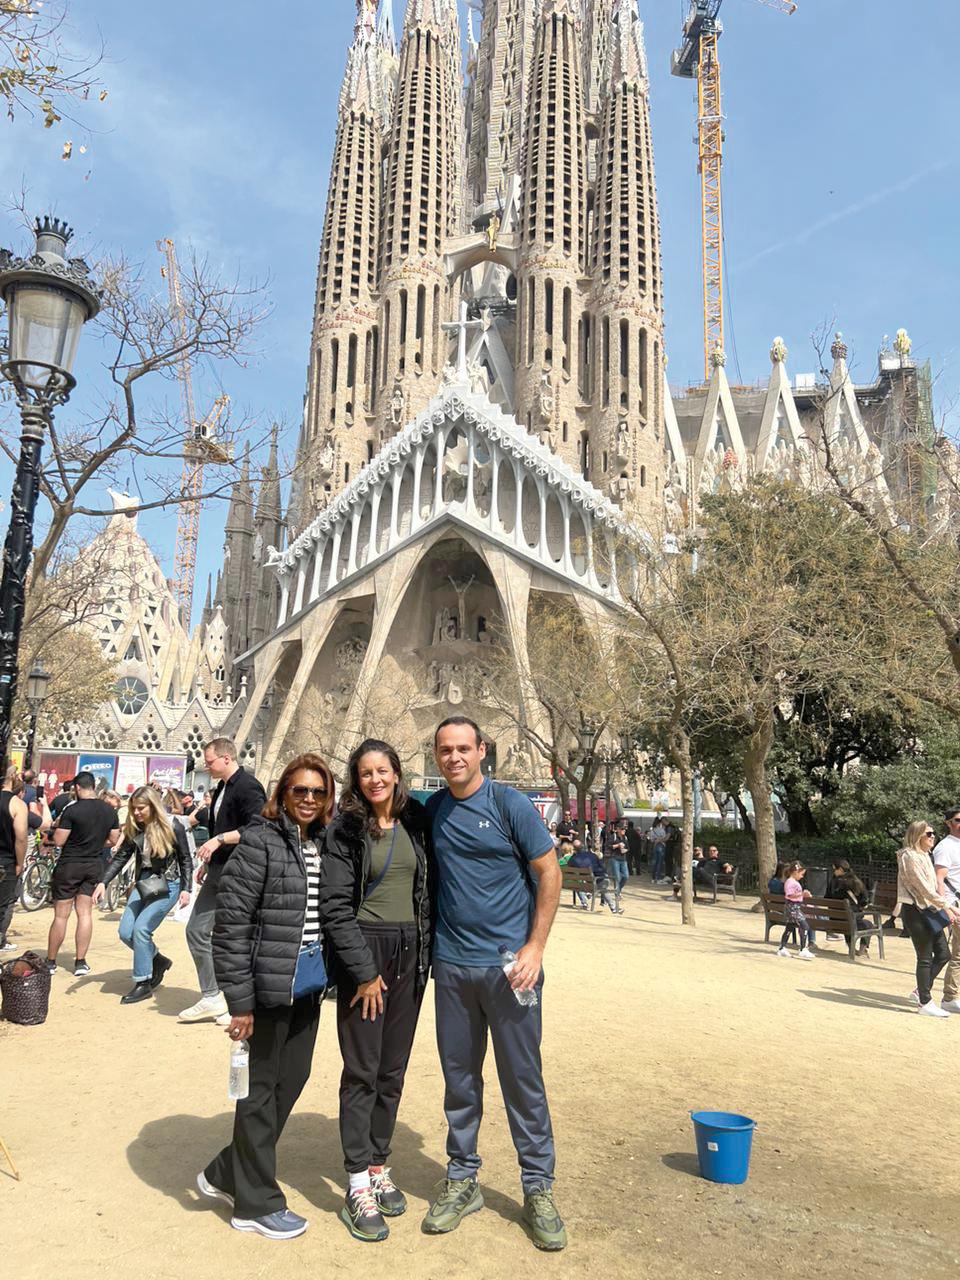 Em Recente viagem cultural à Espanha, nossos amigos Rosânia Silva e o casal Priscila e Eduardo Castanheira, clicado em frente à Igreja da Sagrada Família em Barcelona (Foto/Arquivo pessoal)